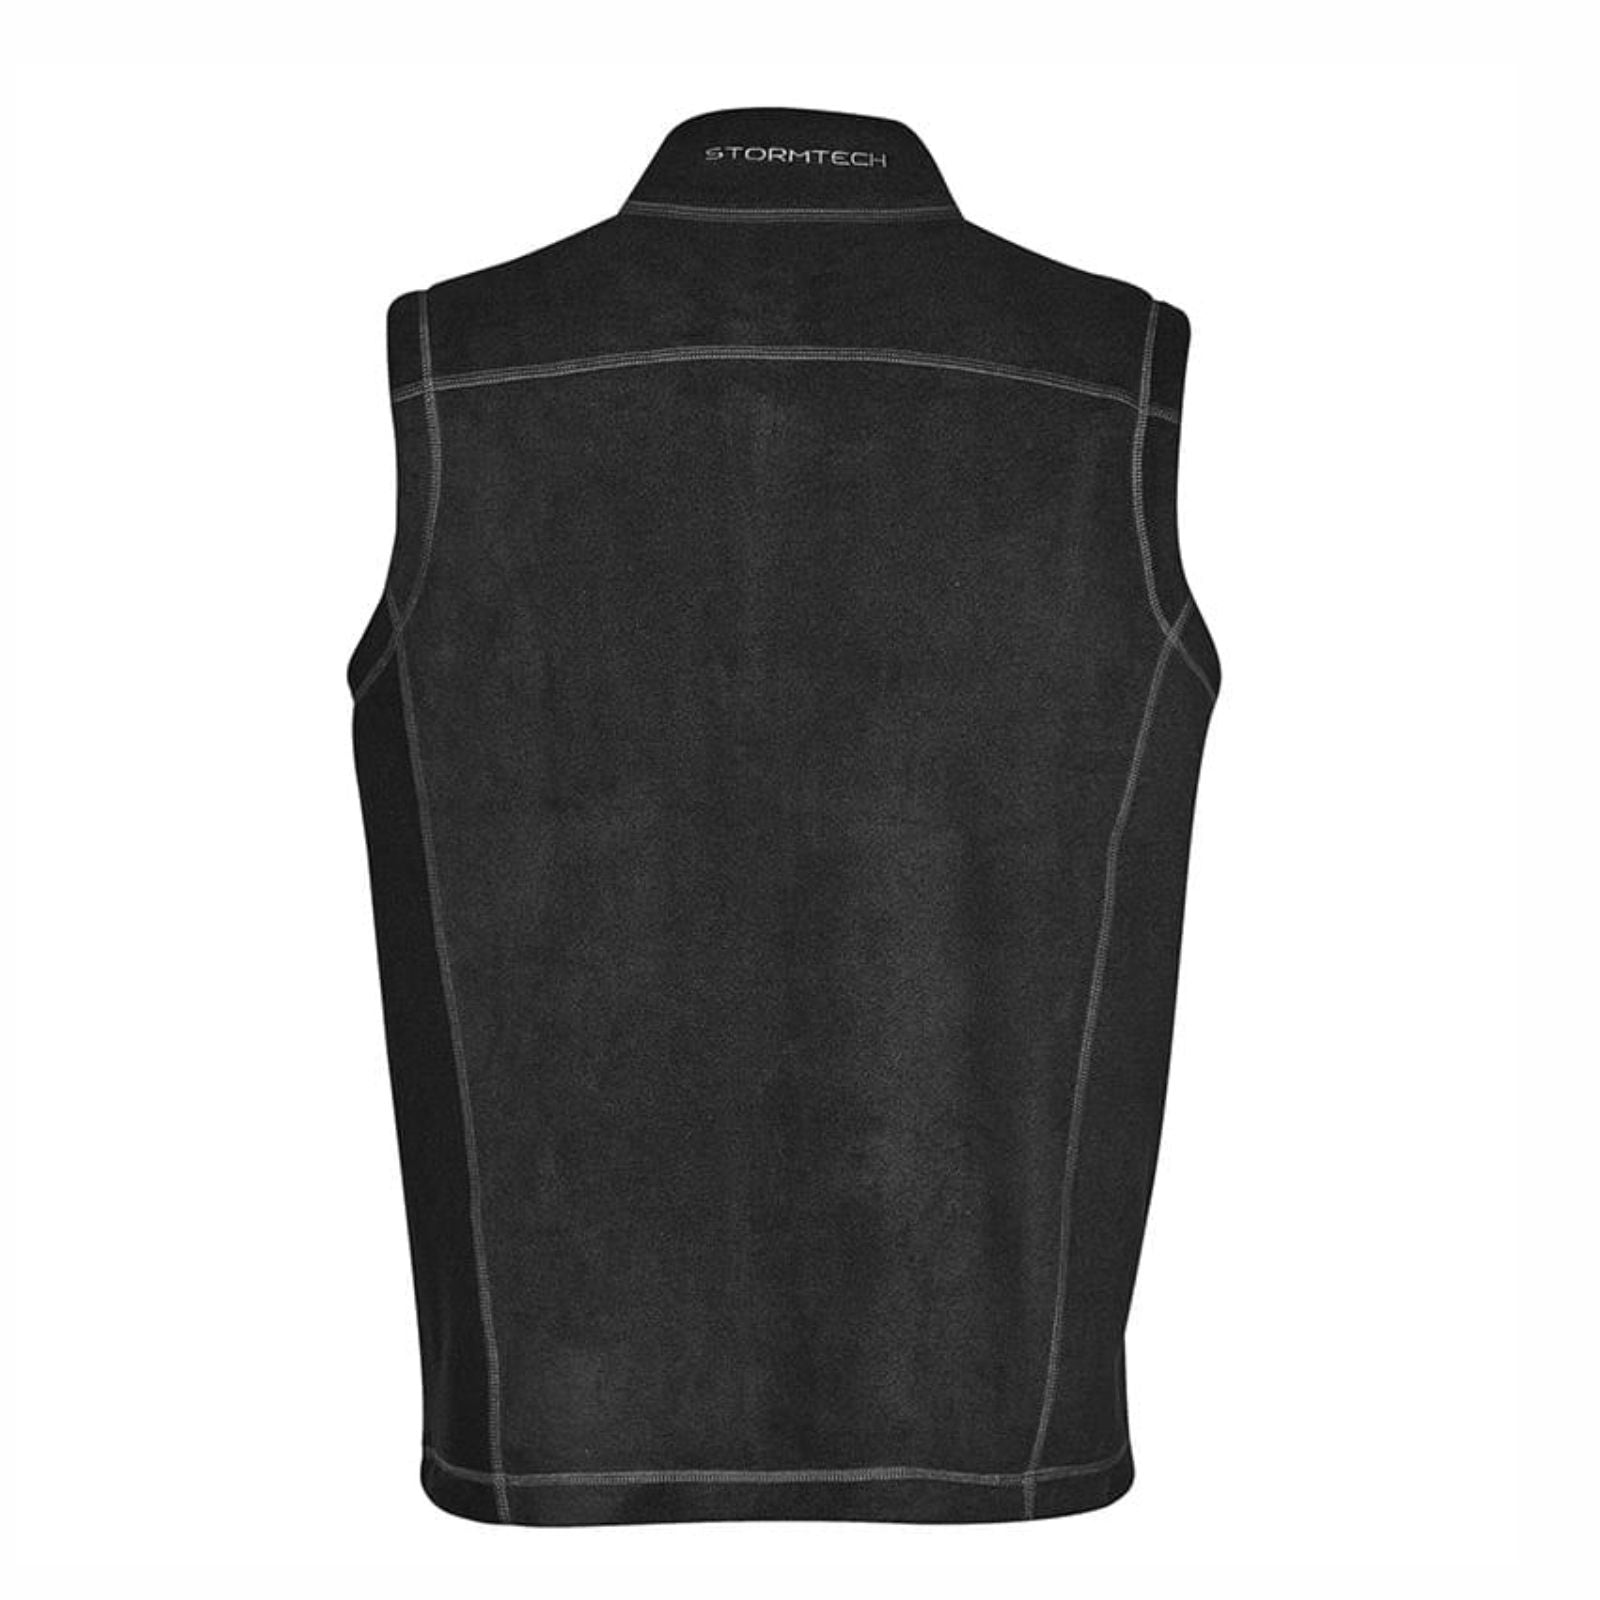 MBH Men's Fleece Zip Coverstitch Vest -Black- Embroidery